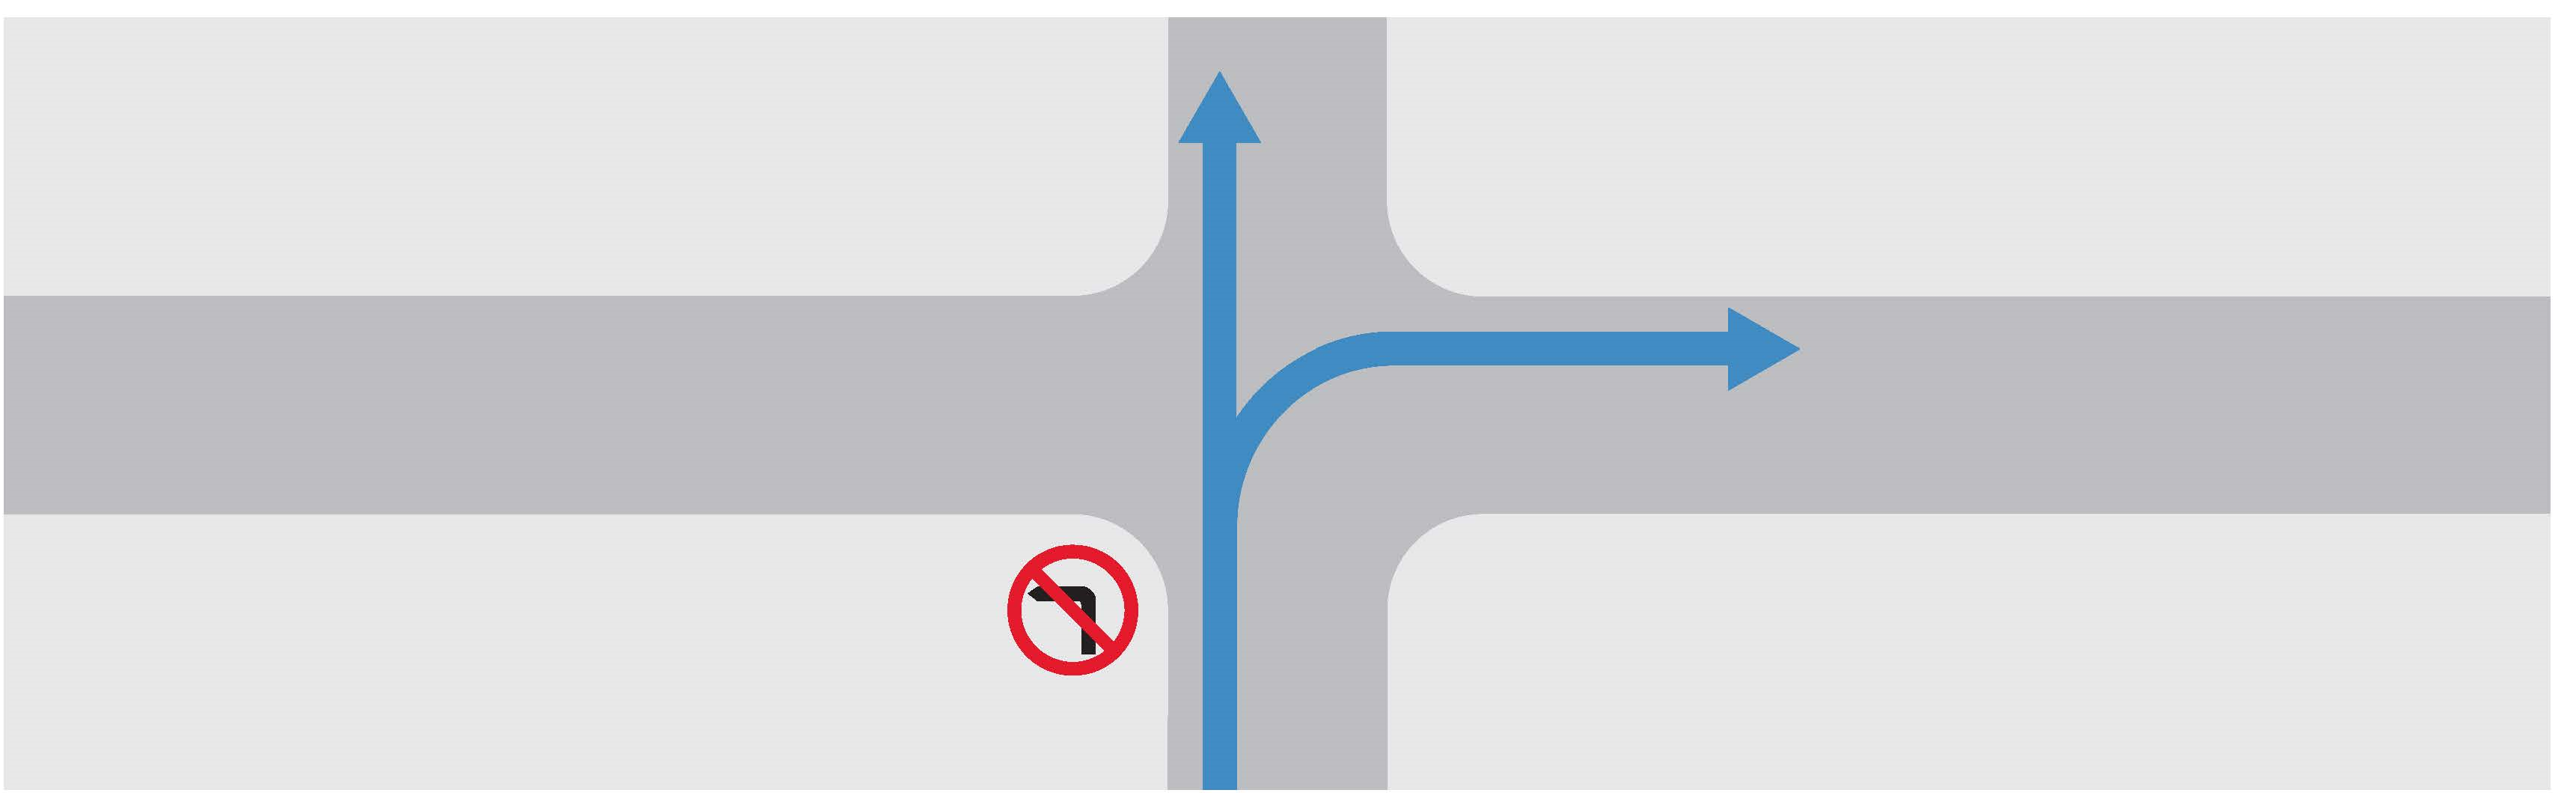 禁止轉左的路口示意圖